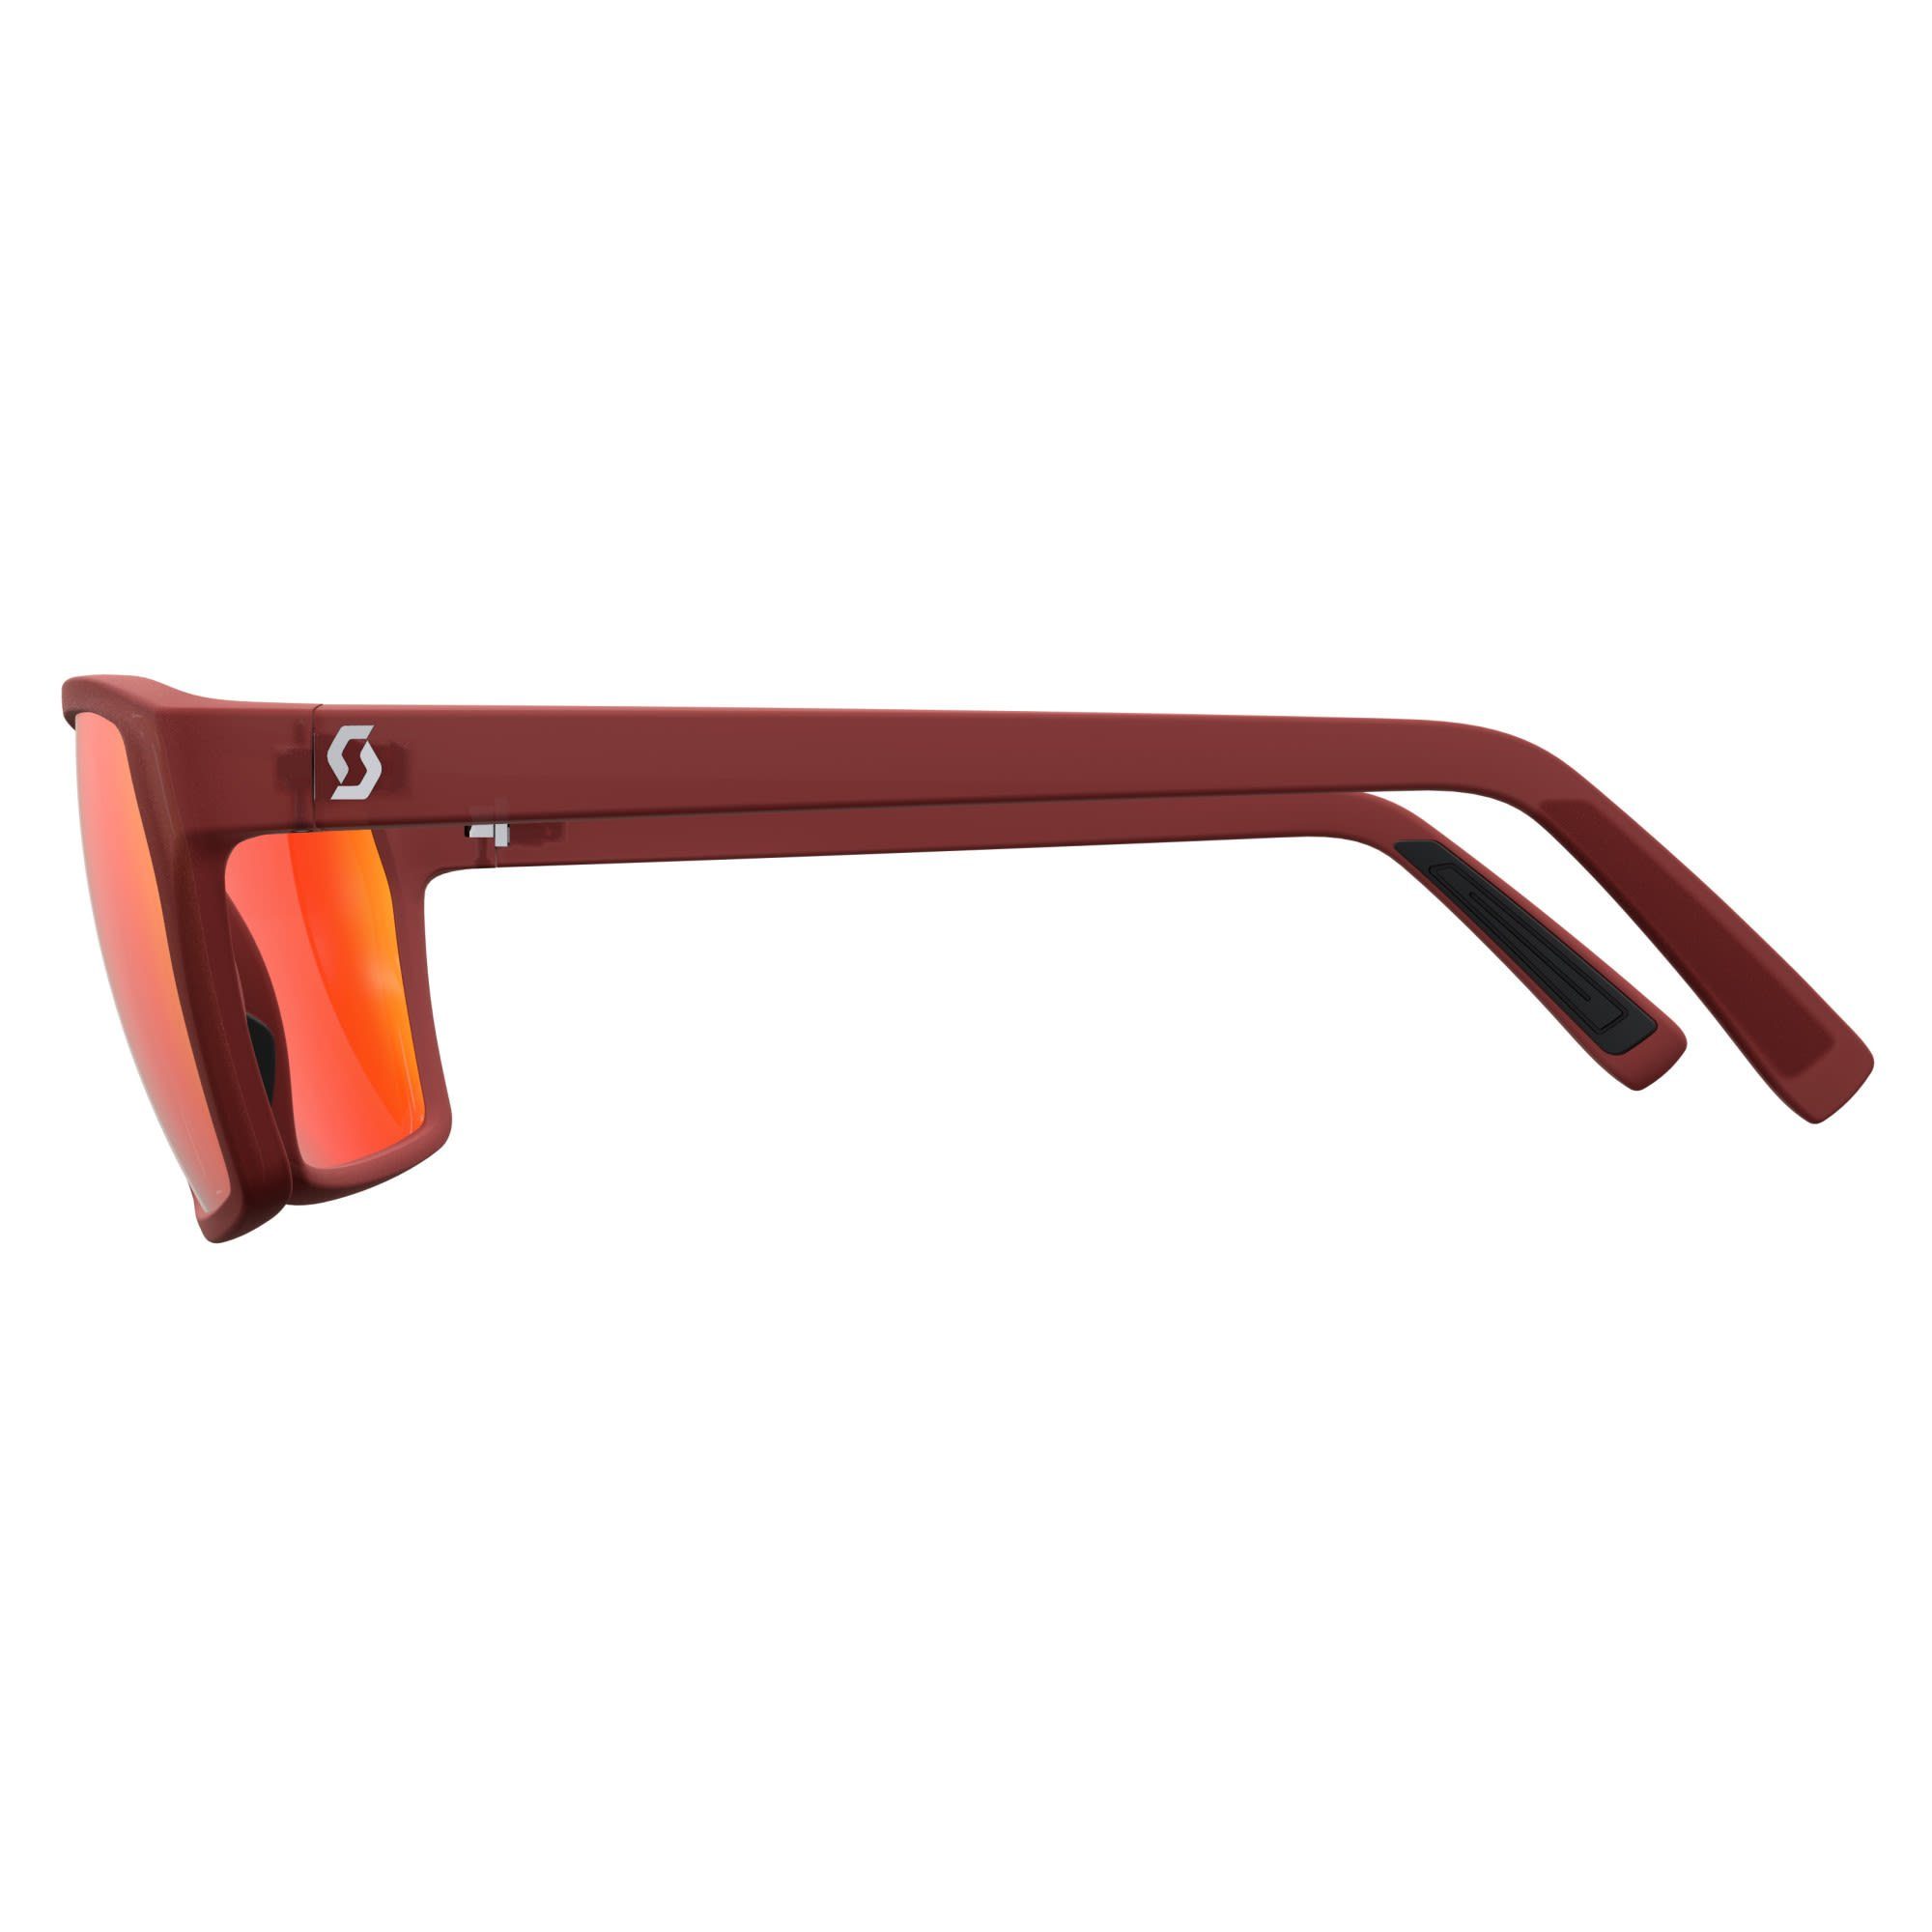 Scott Fahrradbrille Scott Tune Sunglasses Accessoires Chrome - Red Red Merlot